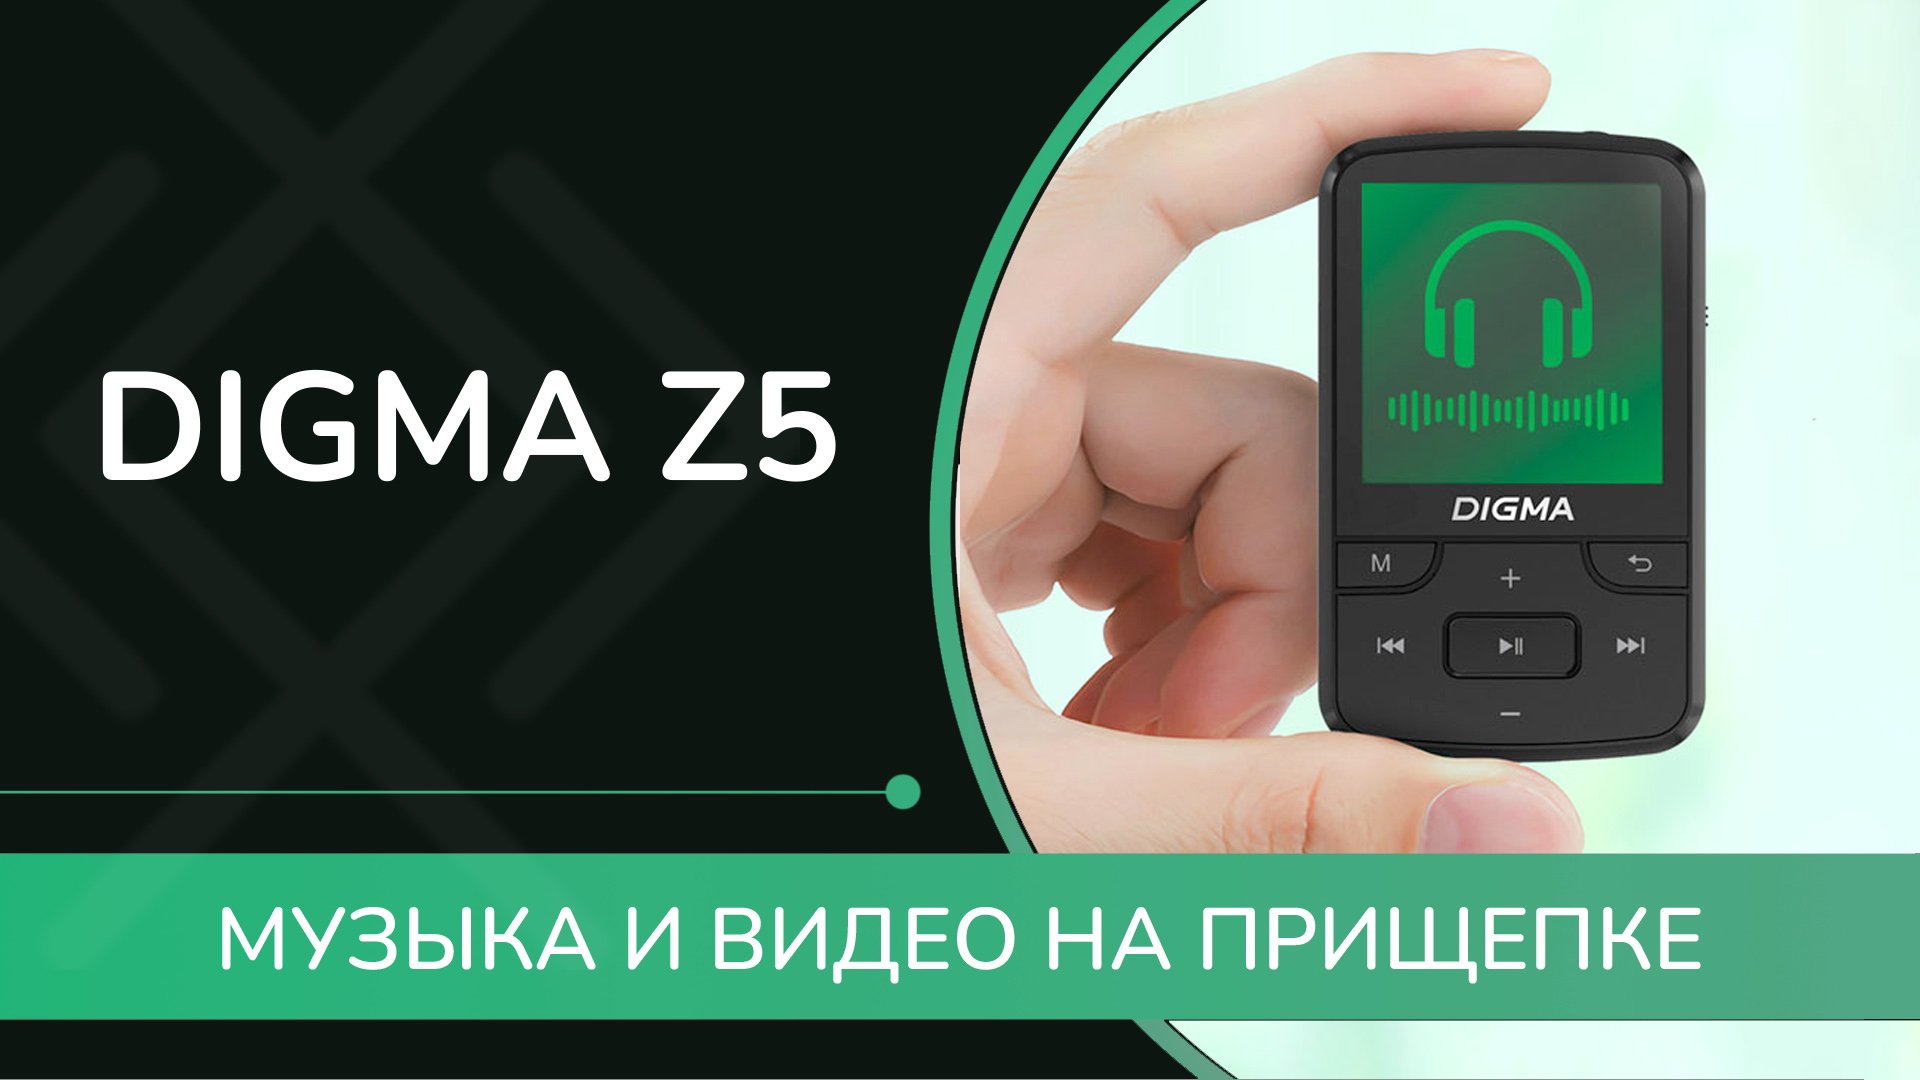 ОБЗОР DIGMA Z5 - маленький плеер с прищепкой, Bluetooth и видео